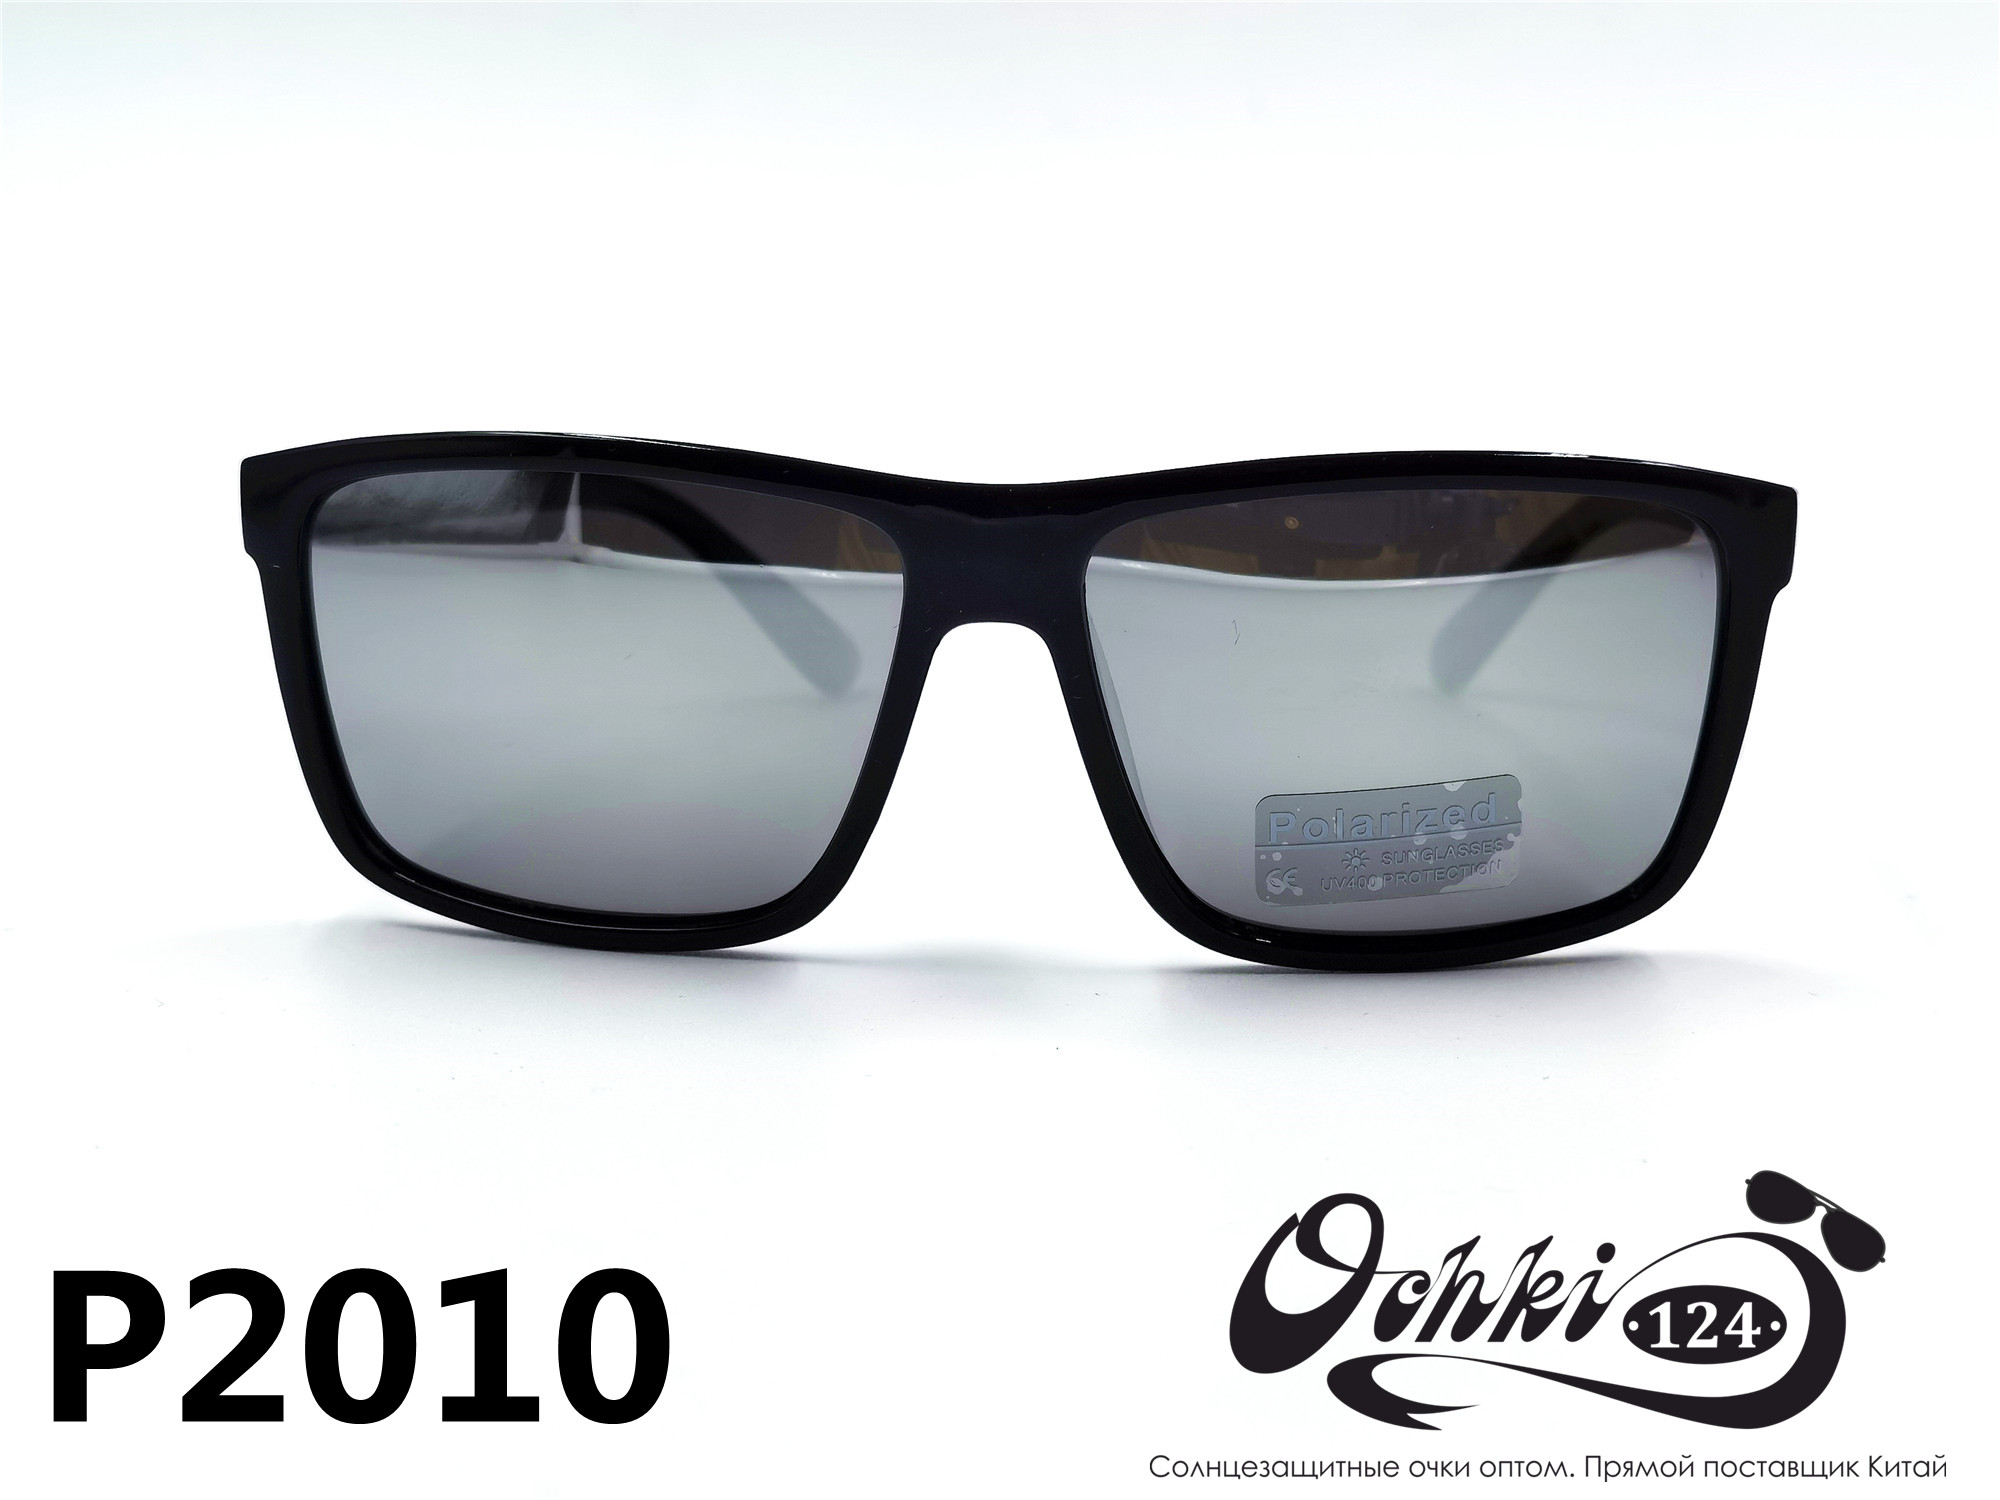  Солнцезащитные очки картинка 2022 Женские Поляризованные Квадратные Materice P2010-5 